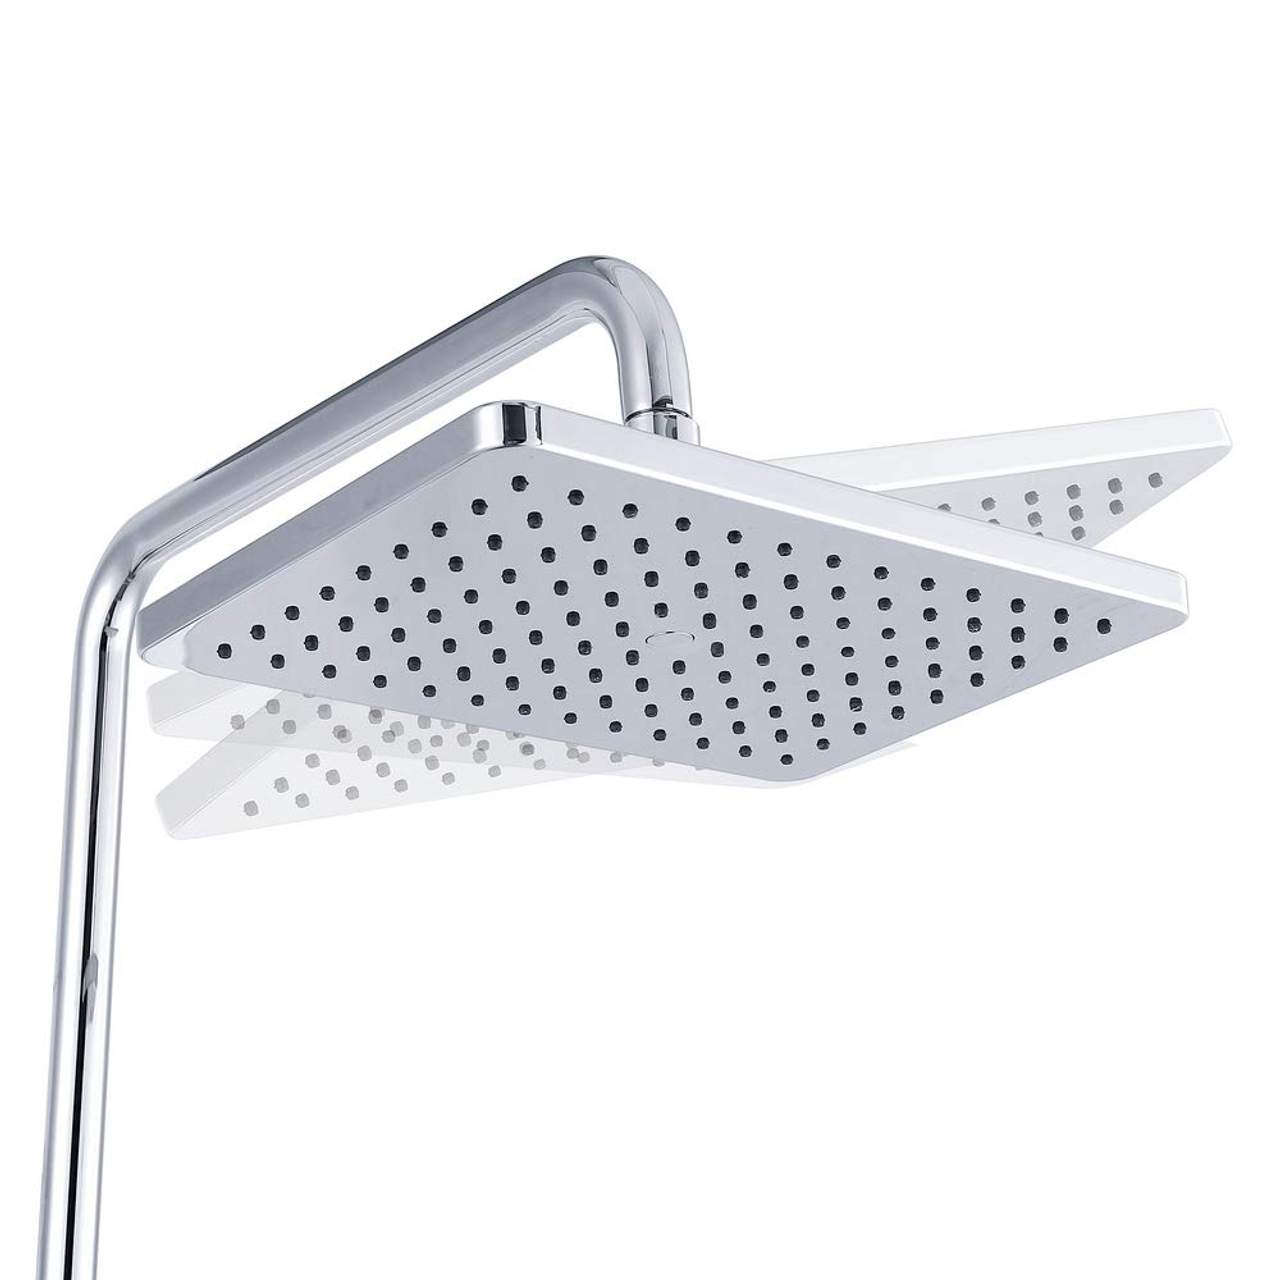 Umi Essentials Duschsystem mit Thermostat Regendusche Duschset Duscharmatur Dusche